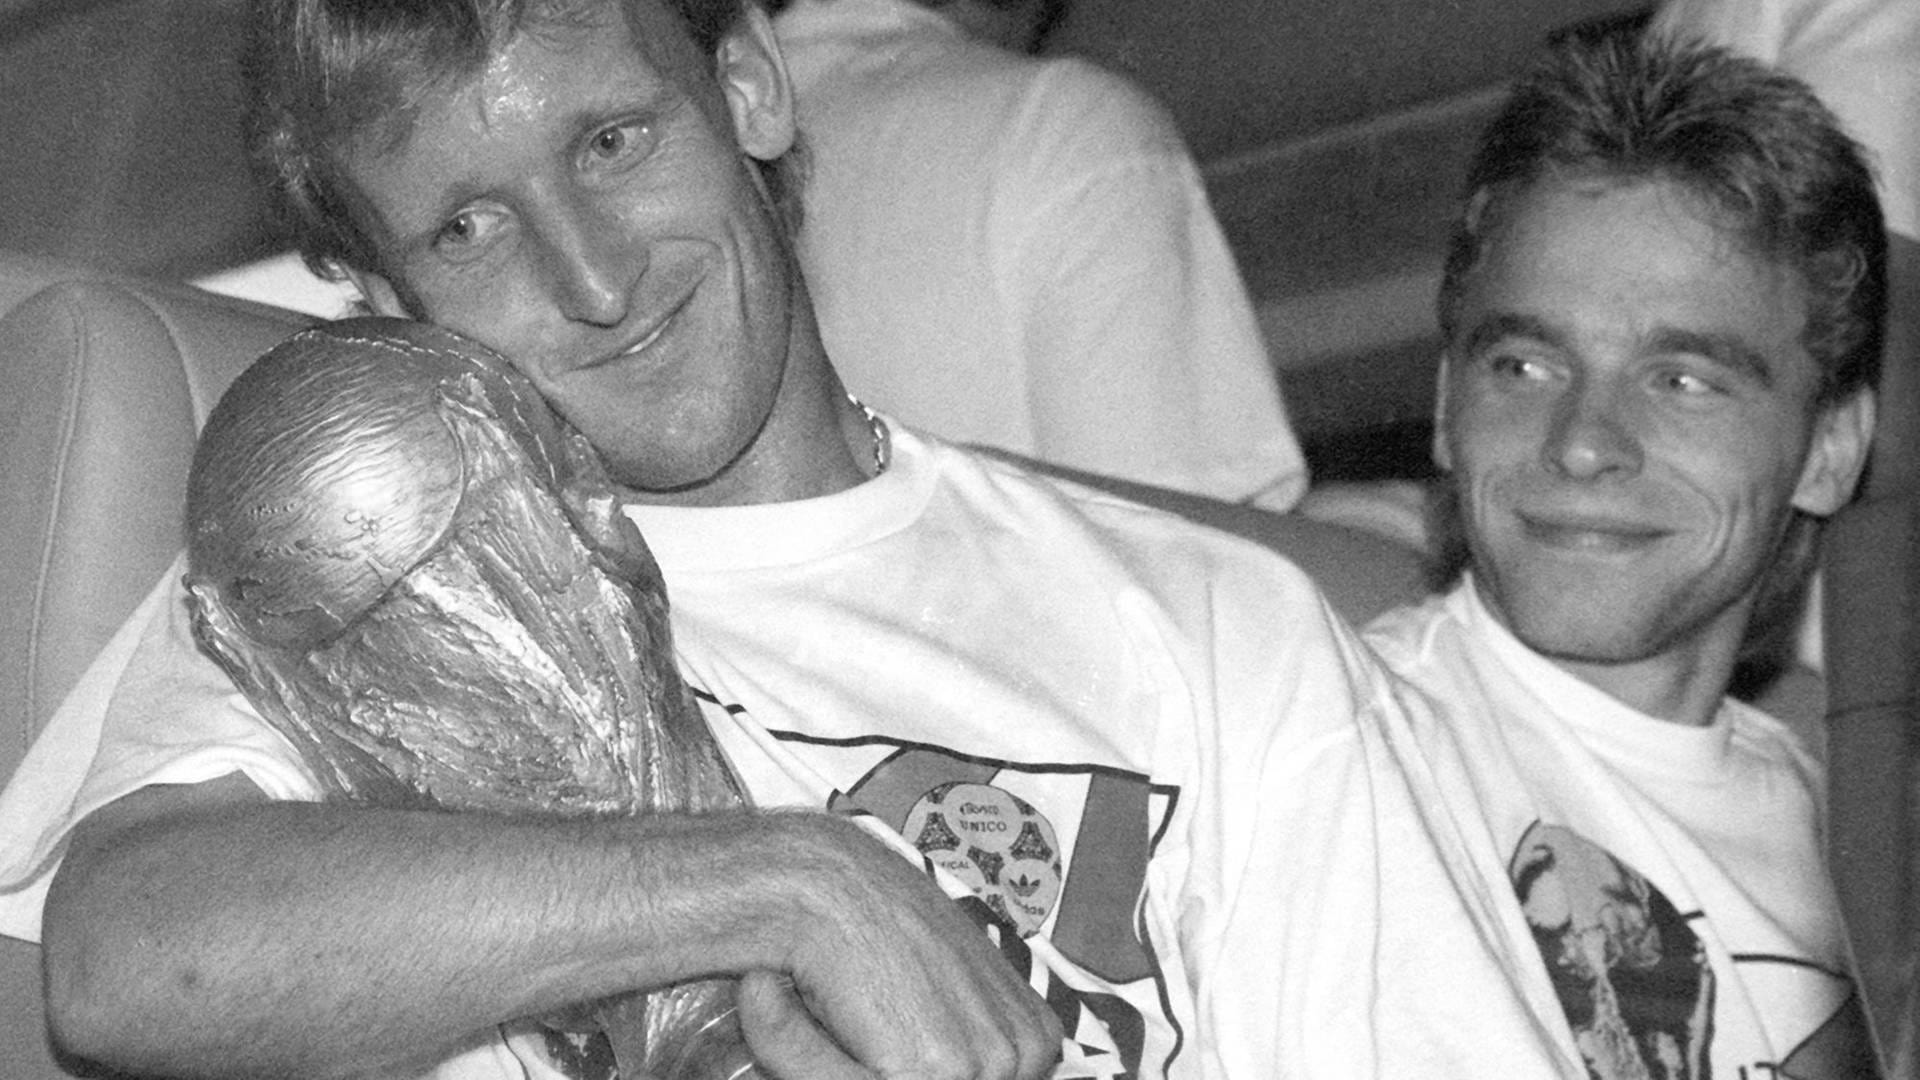 Andreas Brehme überraschend gestorben - Weltmeister von 1990 ist tot